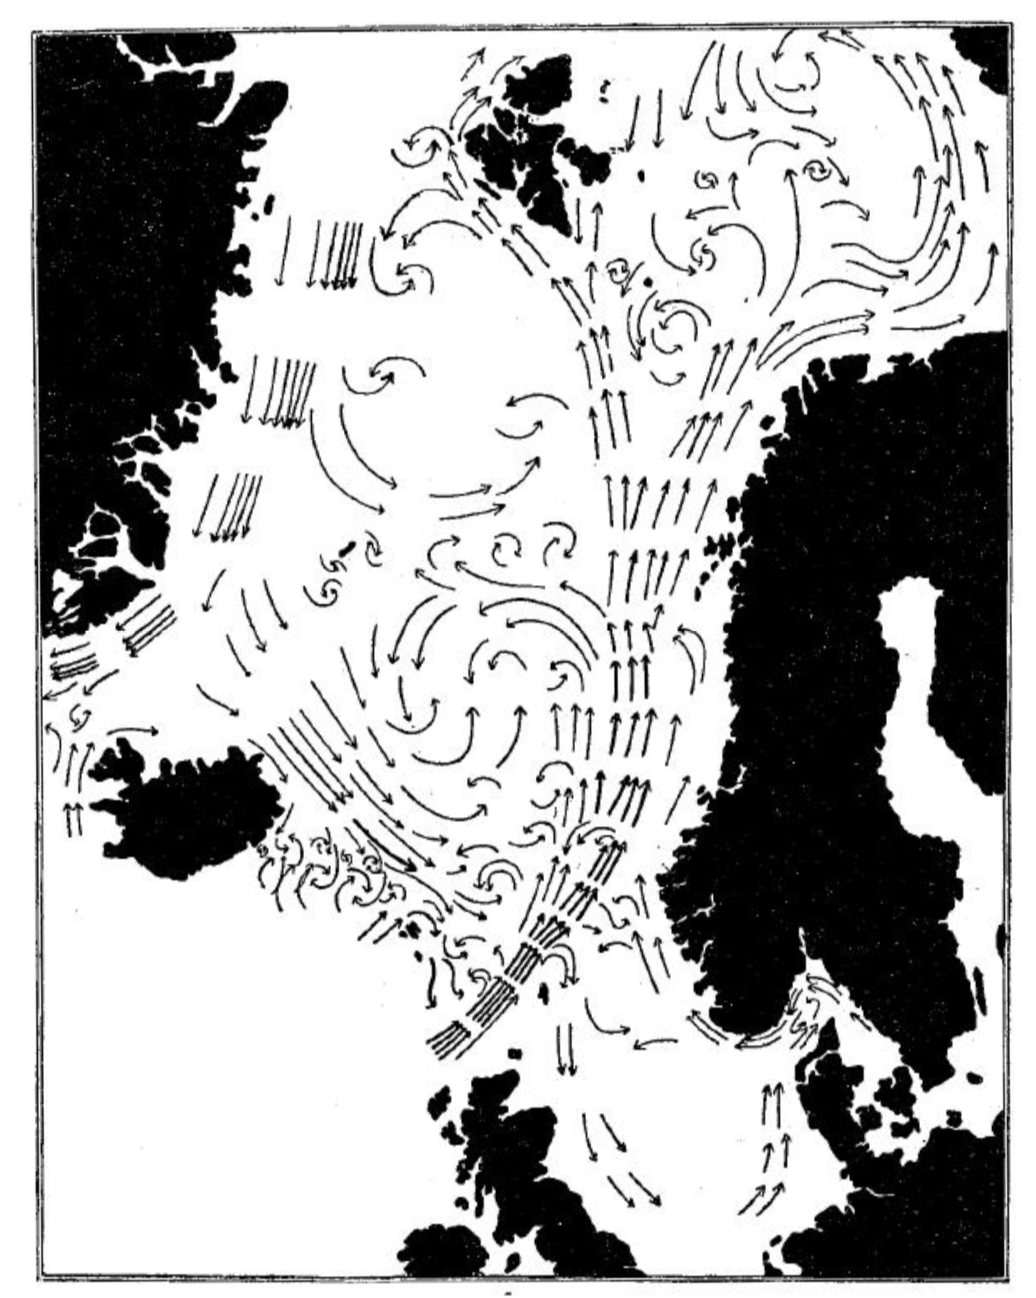 Kart over Norskehavet og dets havstrømmer. Den norske atlanterhavsstrømmen strømmer nordover langs norskekysten mot Arktis. Illustrasjoner: Helland-Hansen og Nansen (1909).